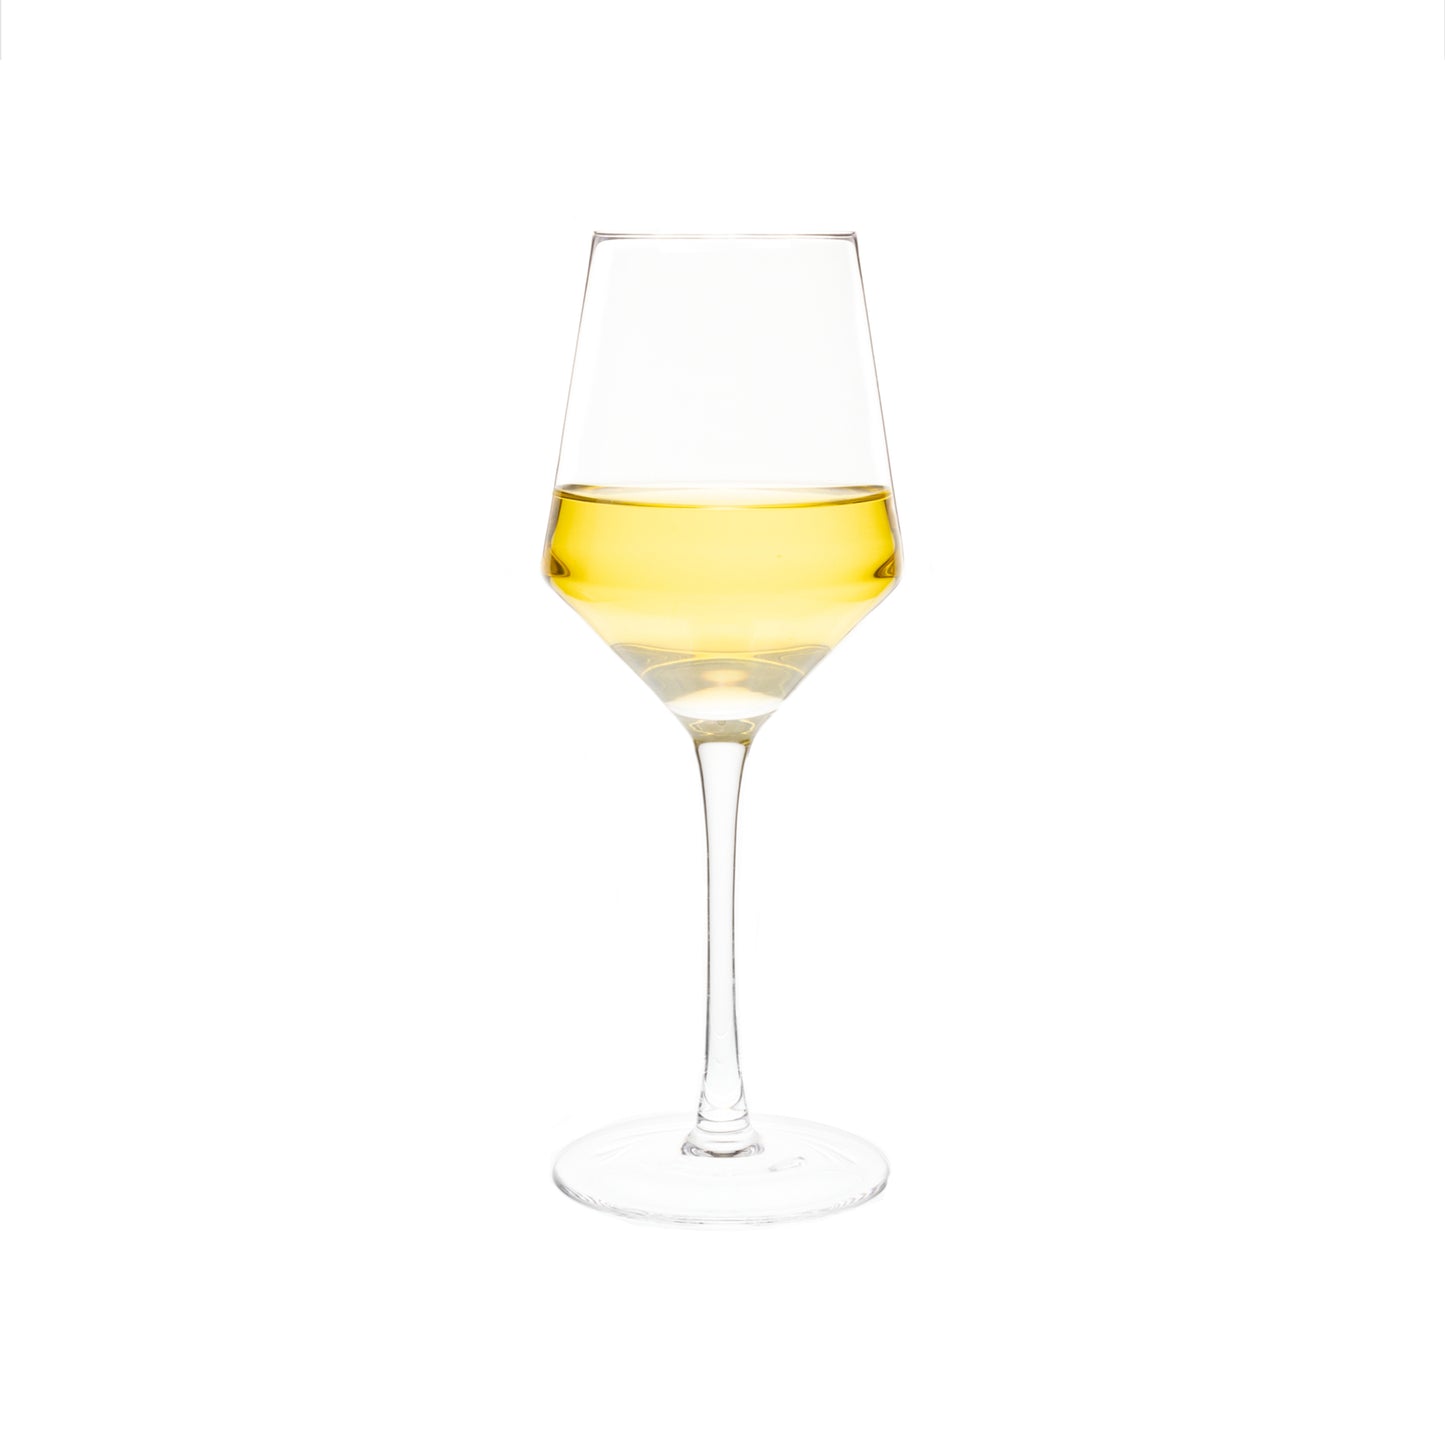 Set of 4 White Wine Glasses - 14 Oz